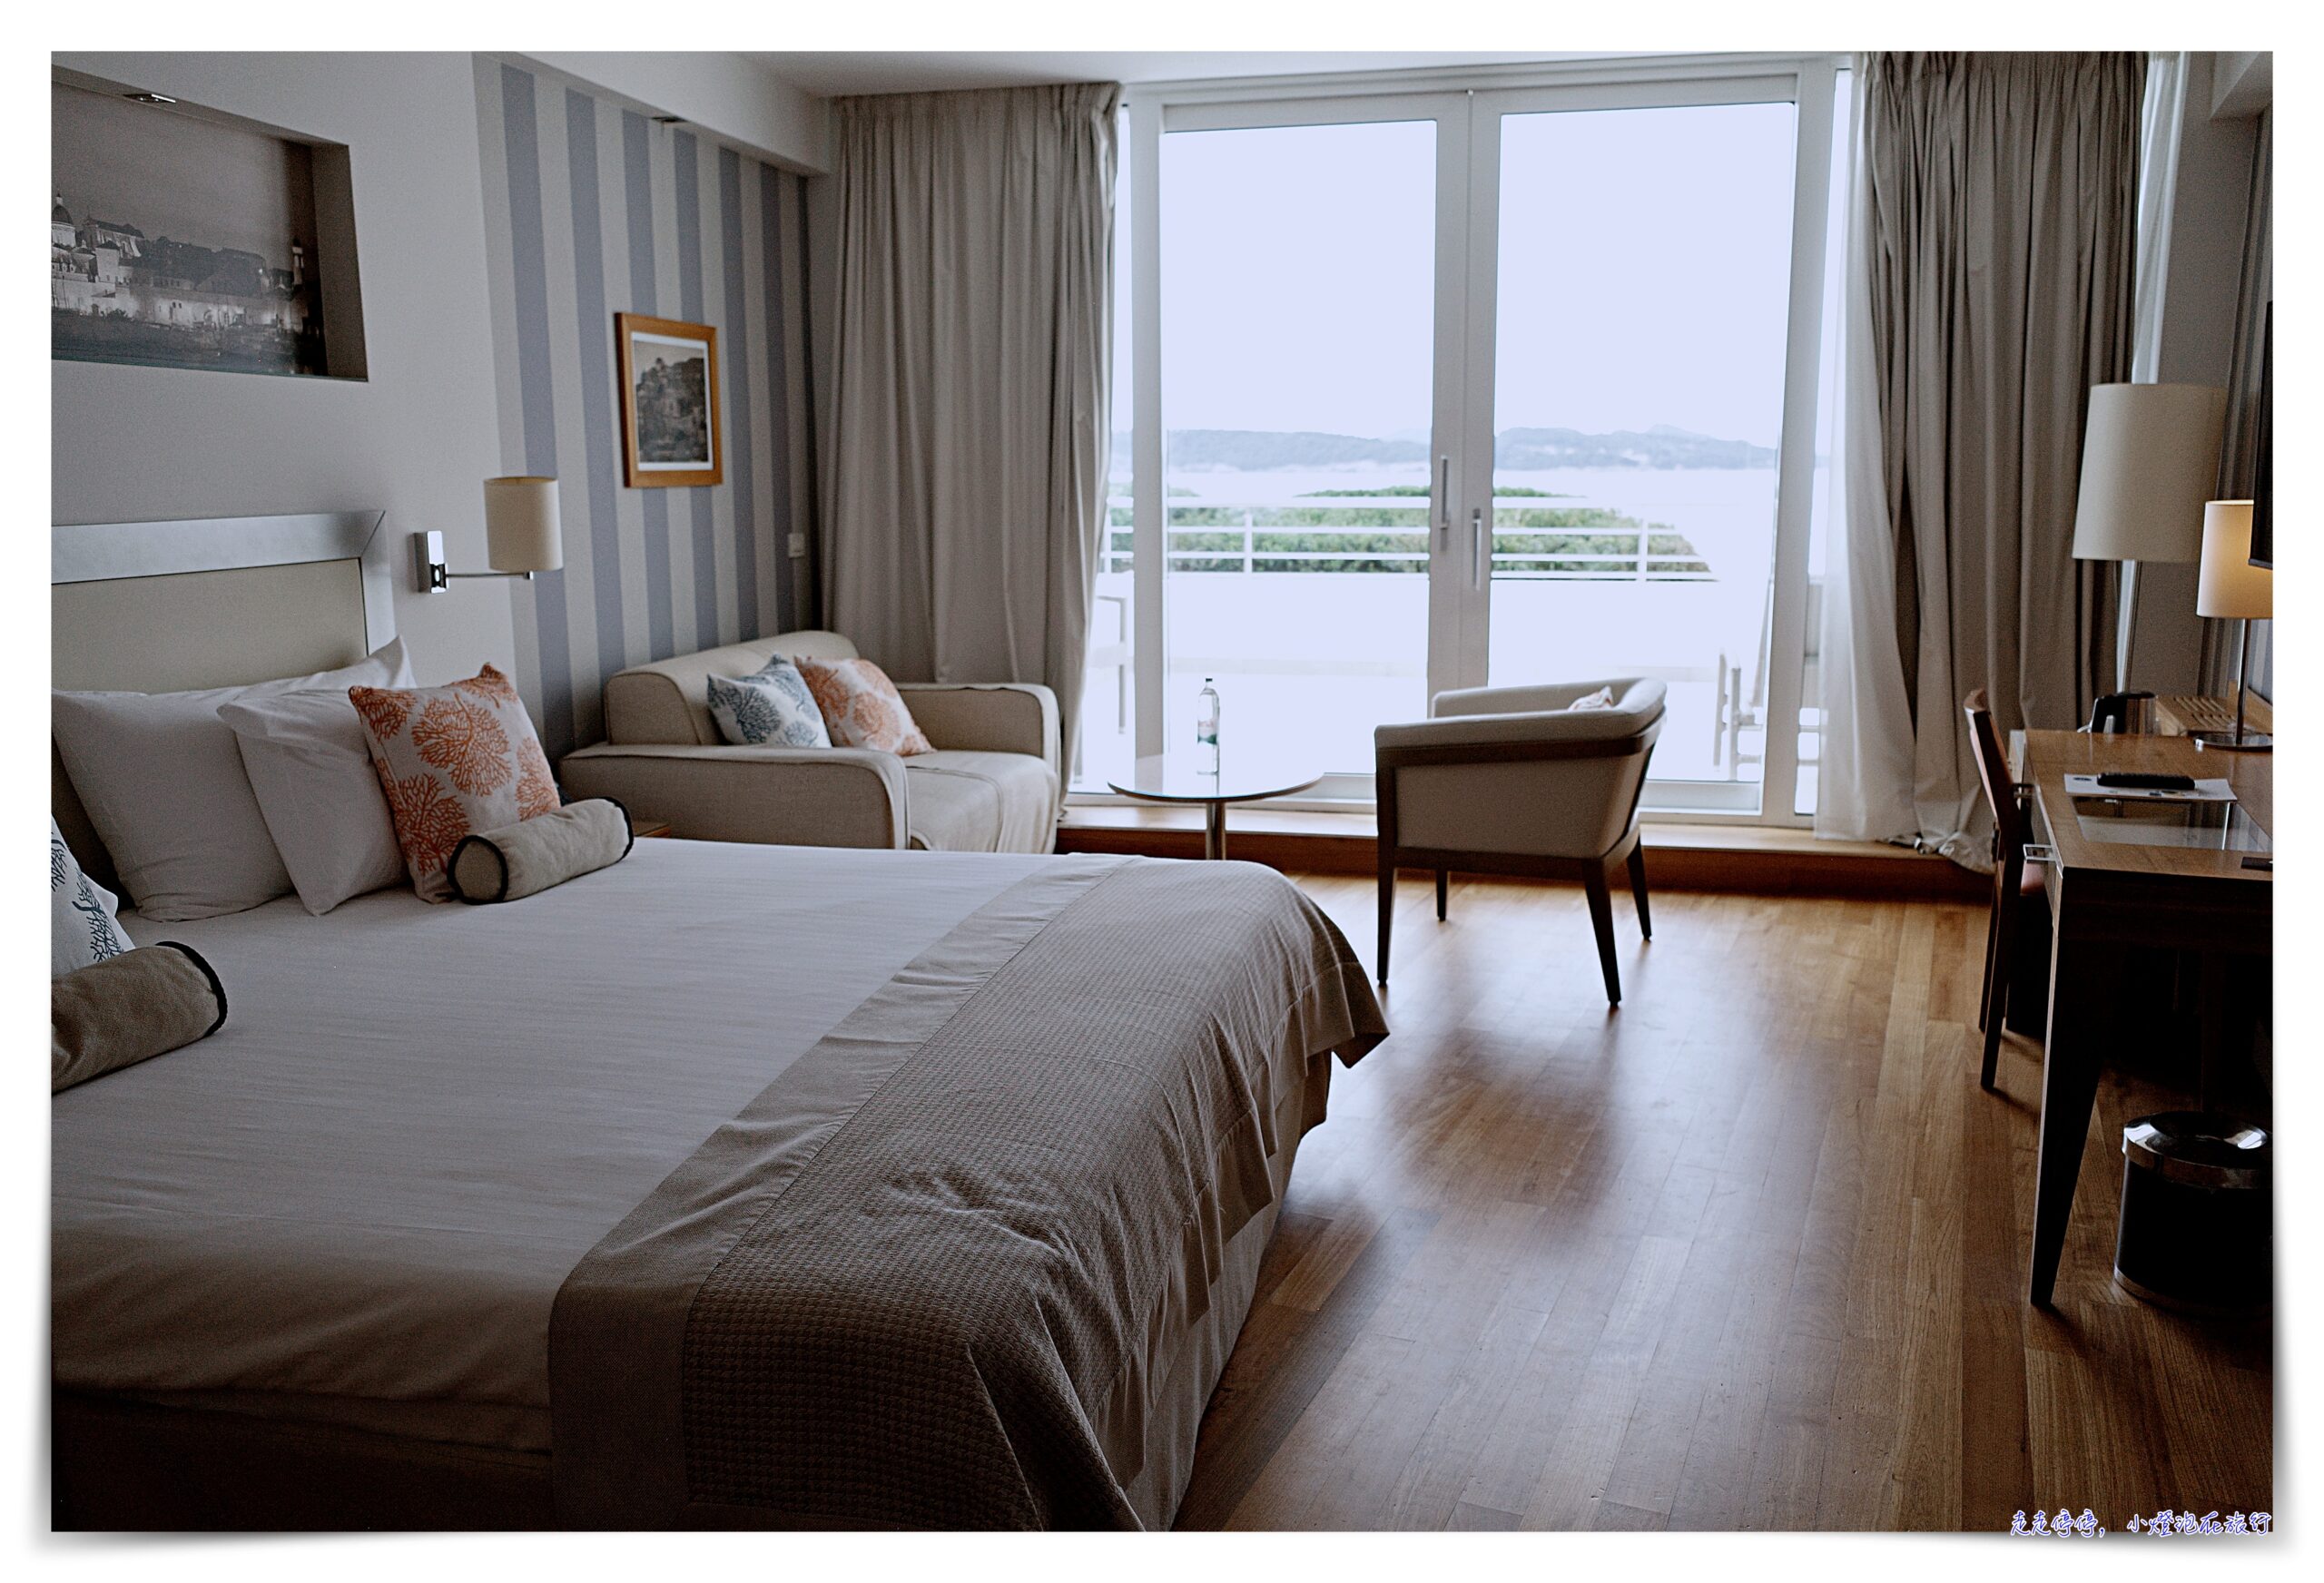 杜布羅夫尼克住宿：「Dubrovnik President Valamar Collection Hotel」，海濱度假區、服務好、臨海view佳